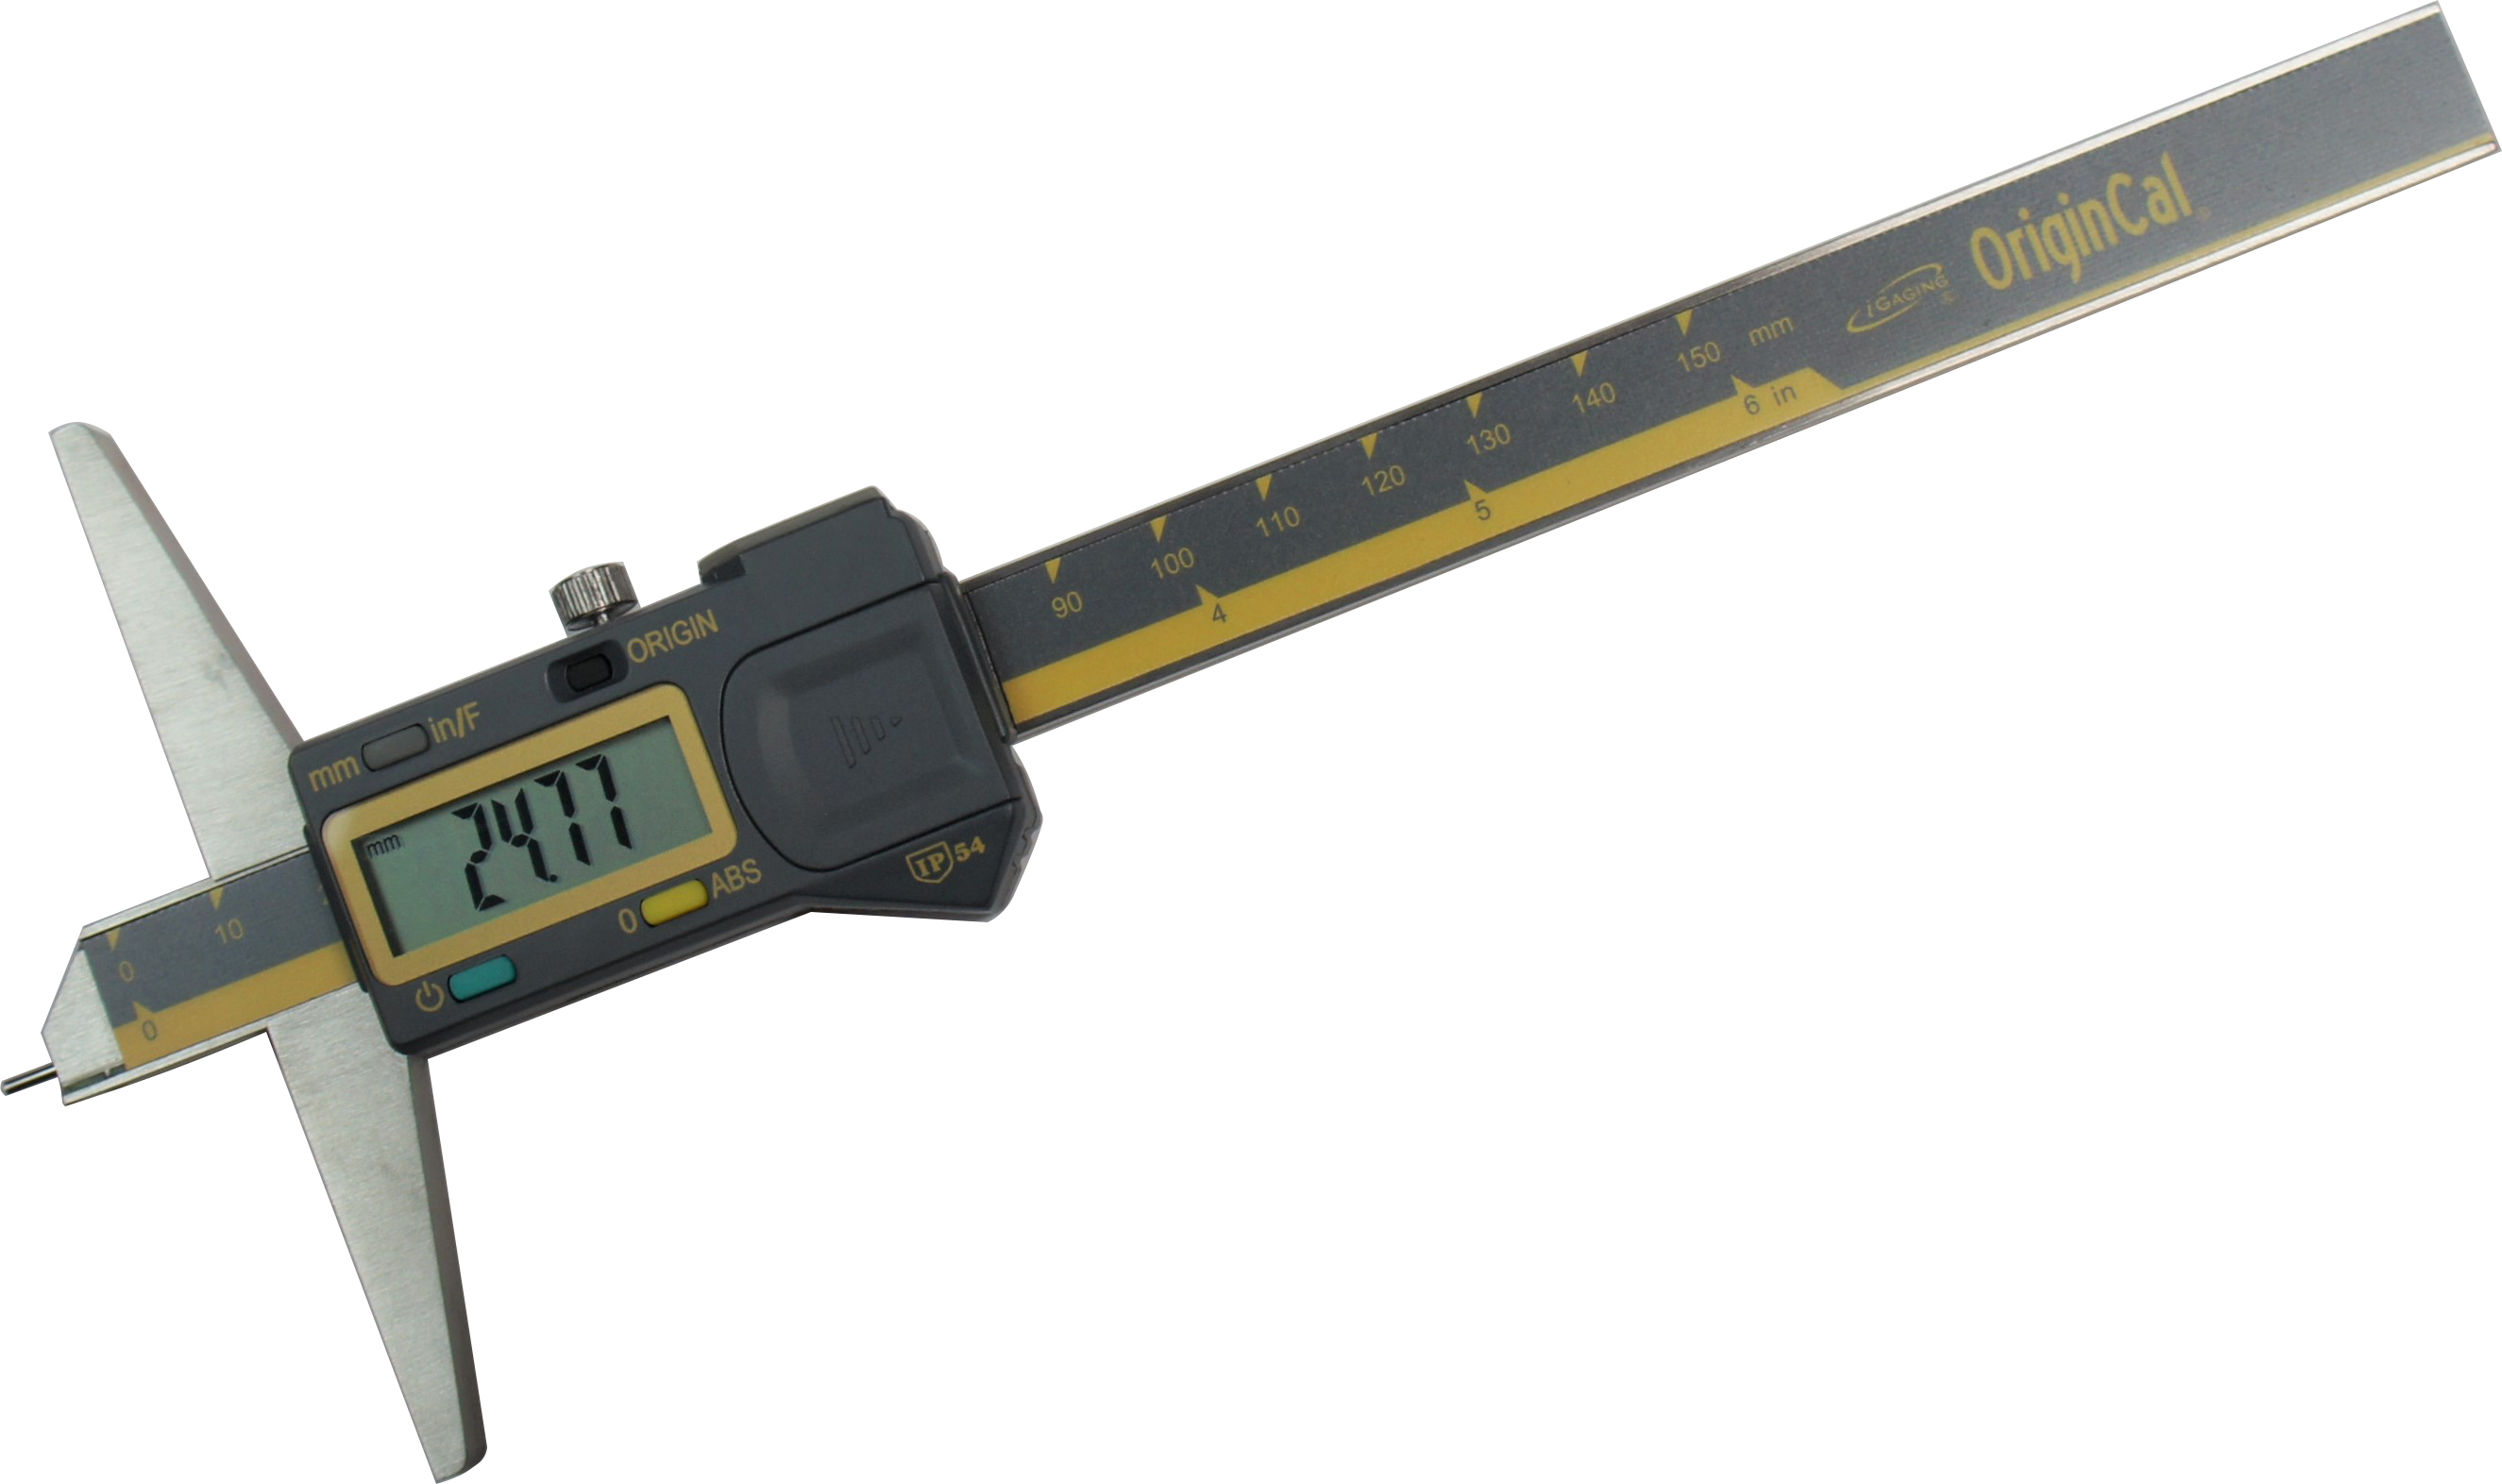 iGaging 100-700-35 Pin Depth Gauge Caliper, Digital ABSOLUTE ORIGIN 6"